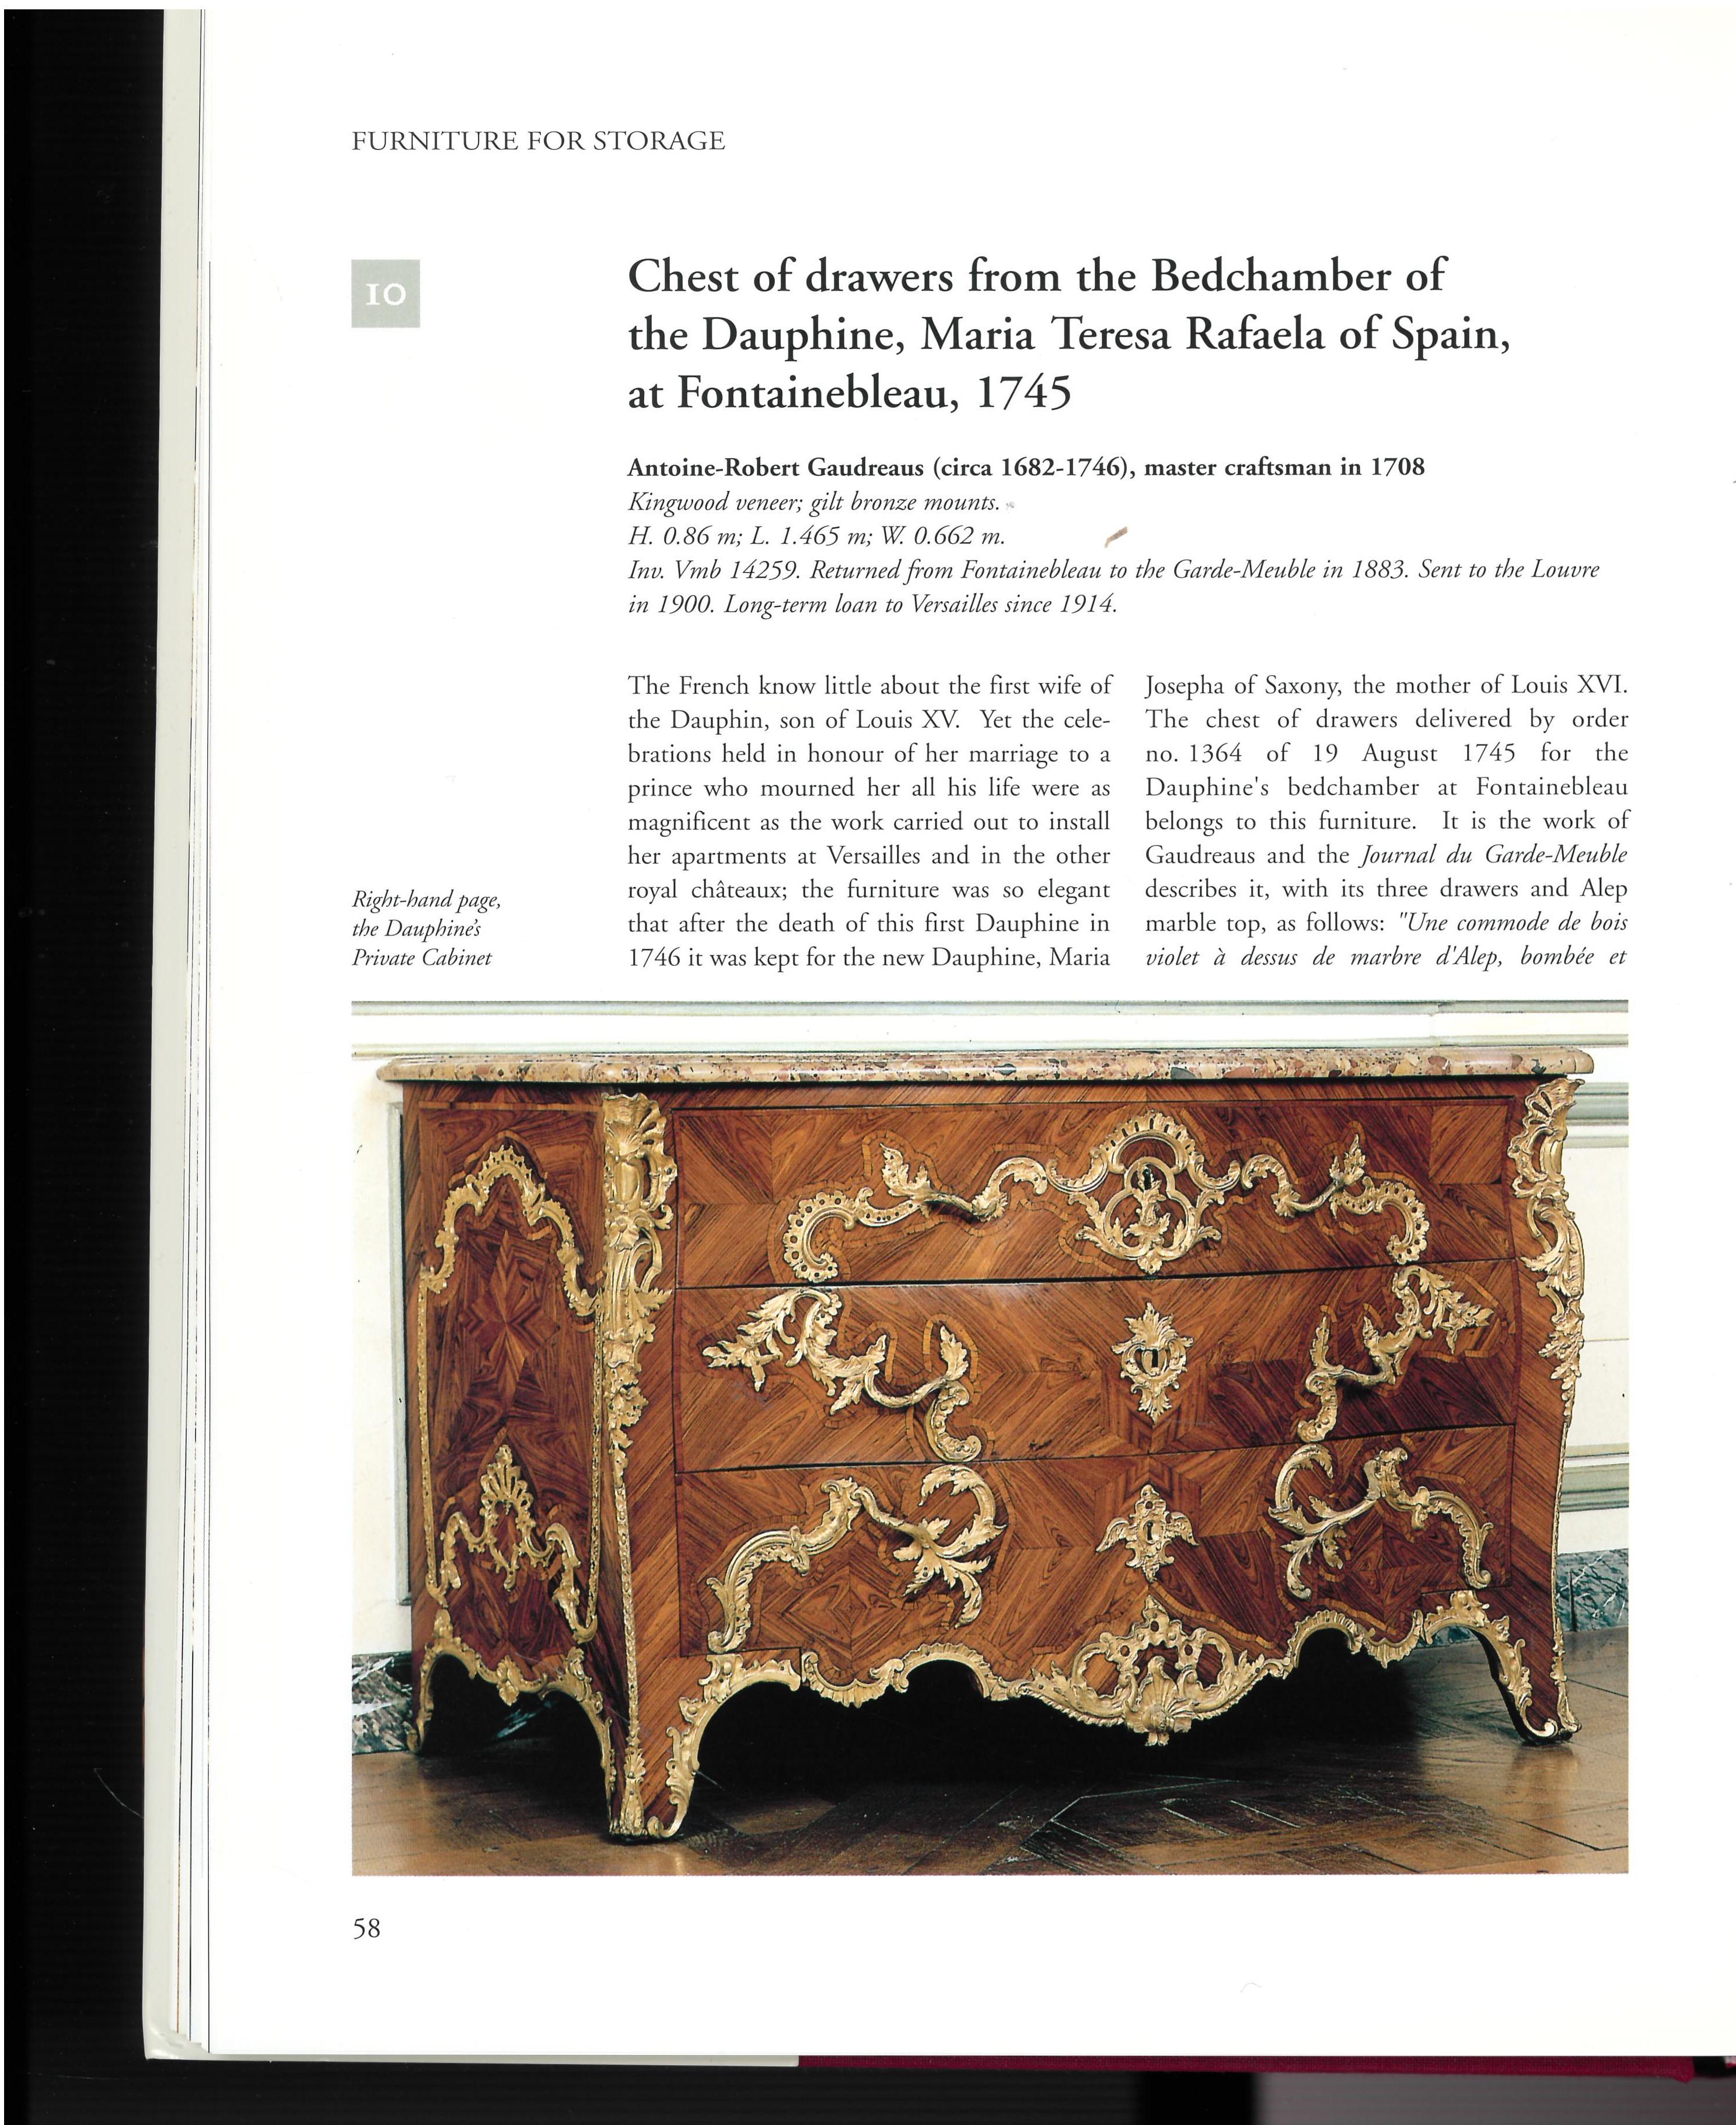 Eine wunderschön fotografierte, zweibändige Buchreihe, die diese prestigeträchtige Möbelsammlung auf eine Art und Weise präsentiert, wie sie von den Besuchern des Palastes nicht gesehen werden kann. Versailles war vom späten 17. Jahrhundert bis zur